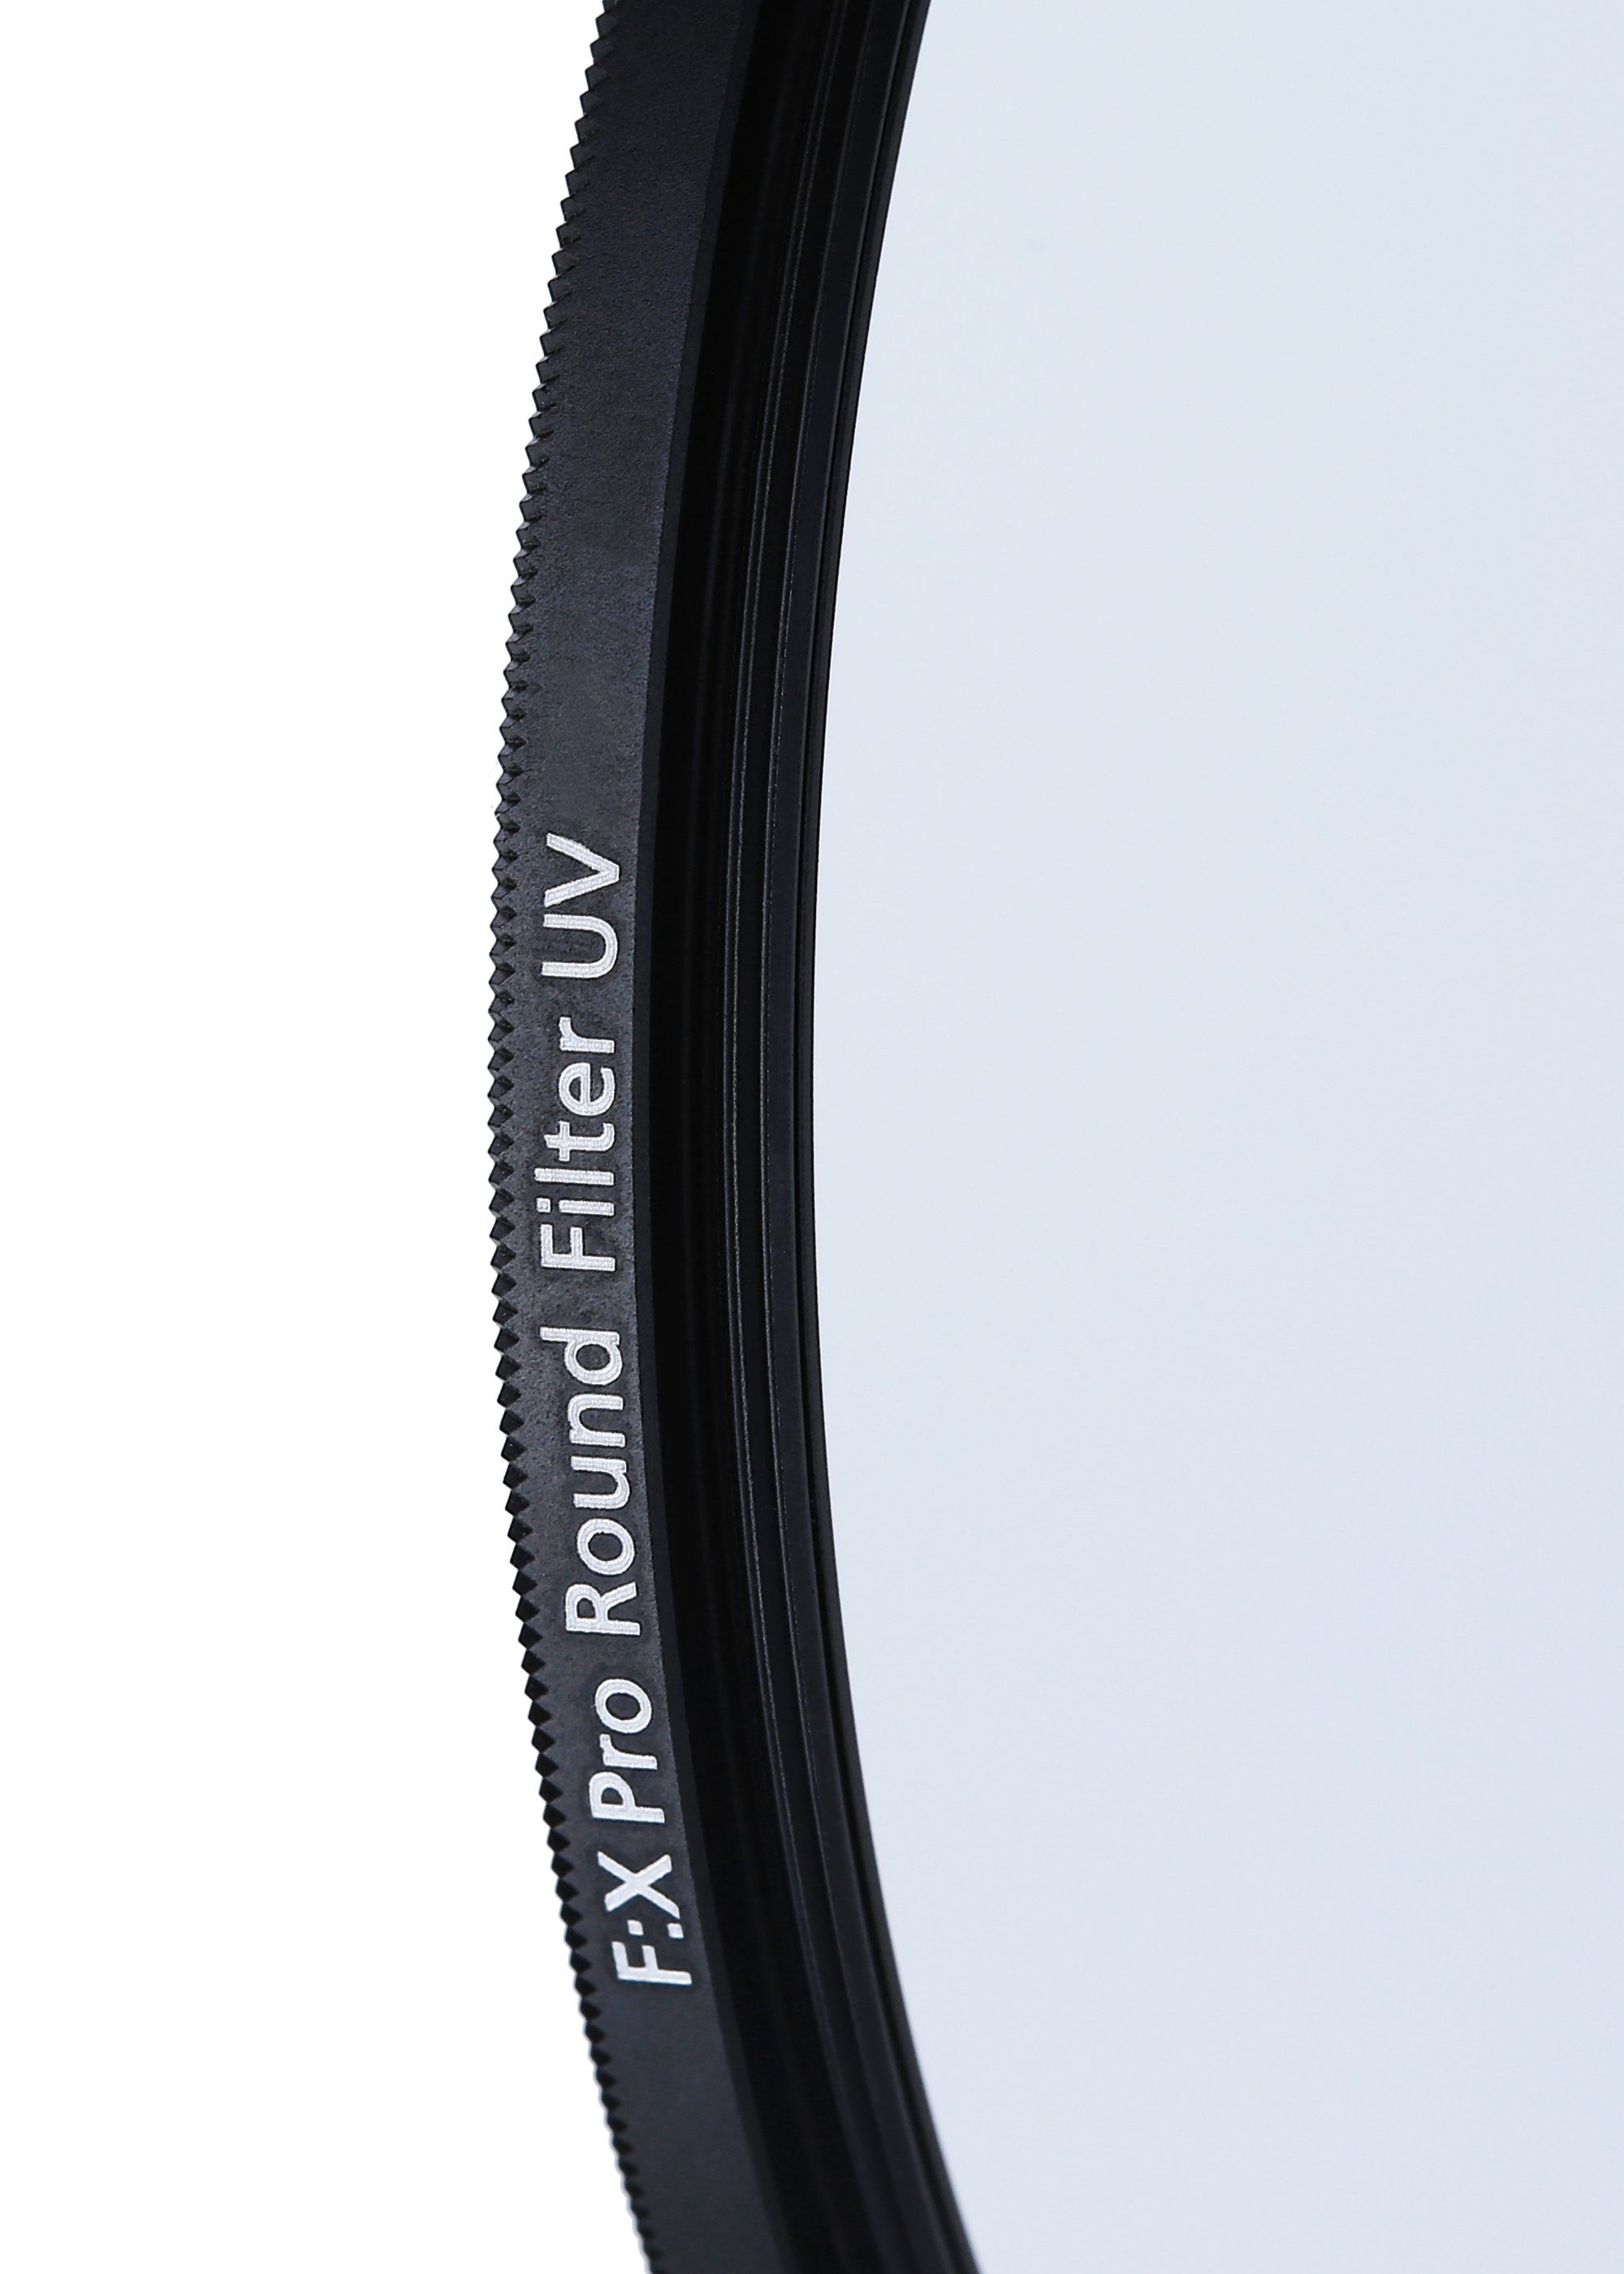 Rollei Rollei (aus Objektivzubehör Gorilla-Glas) F:X UV Pro mm Filter robustem 67